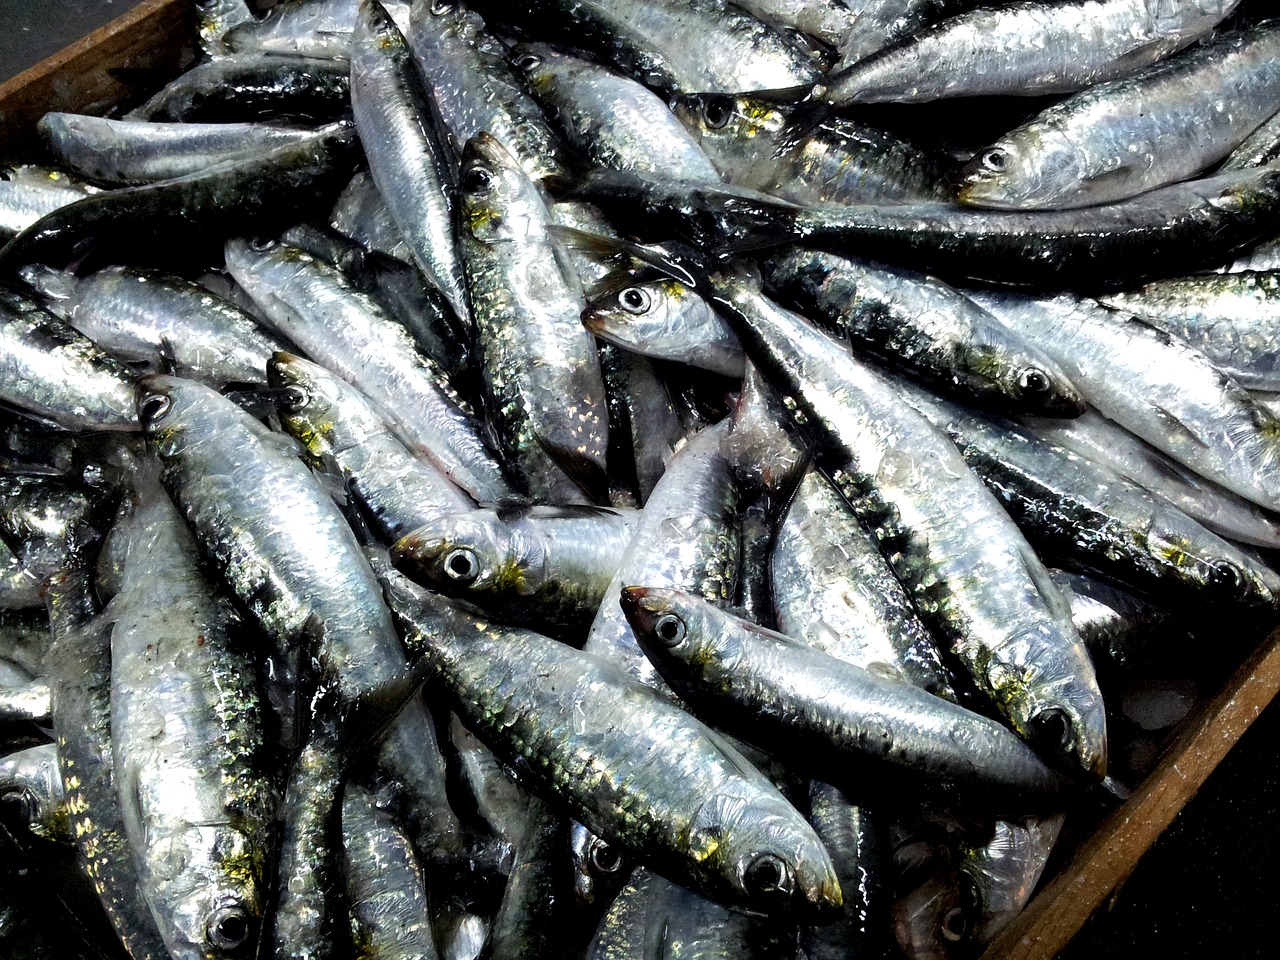 sardines malpica de bergantiños coruña free photo